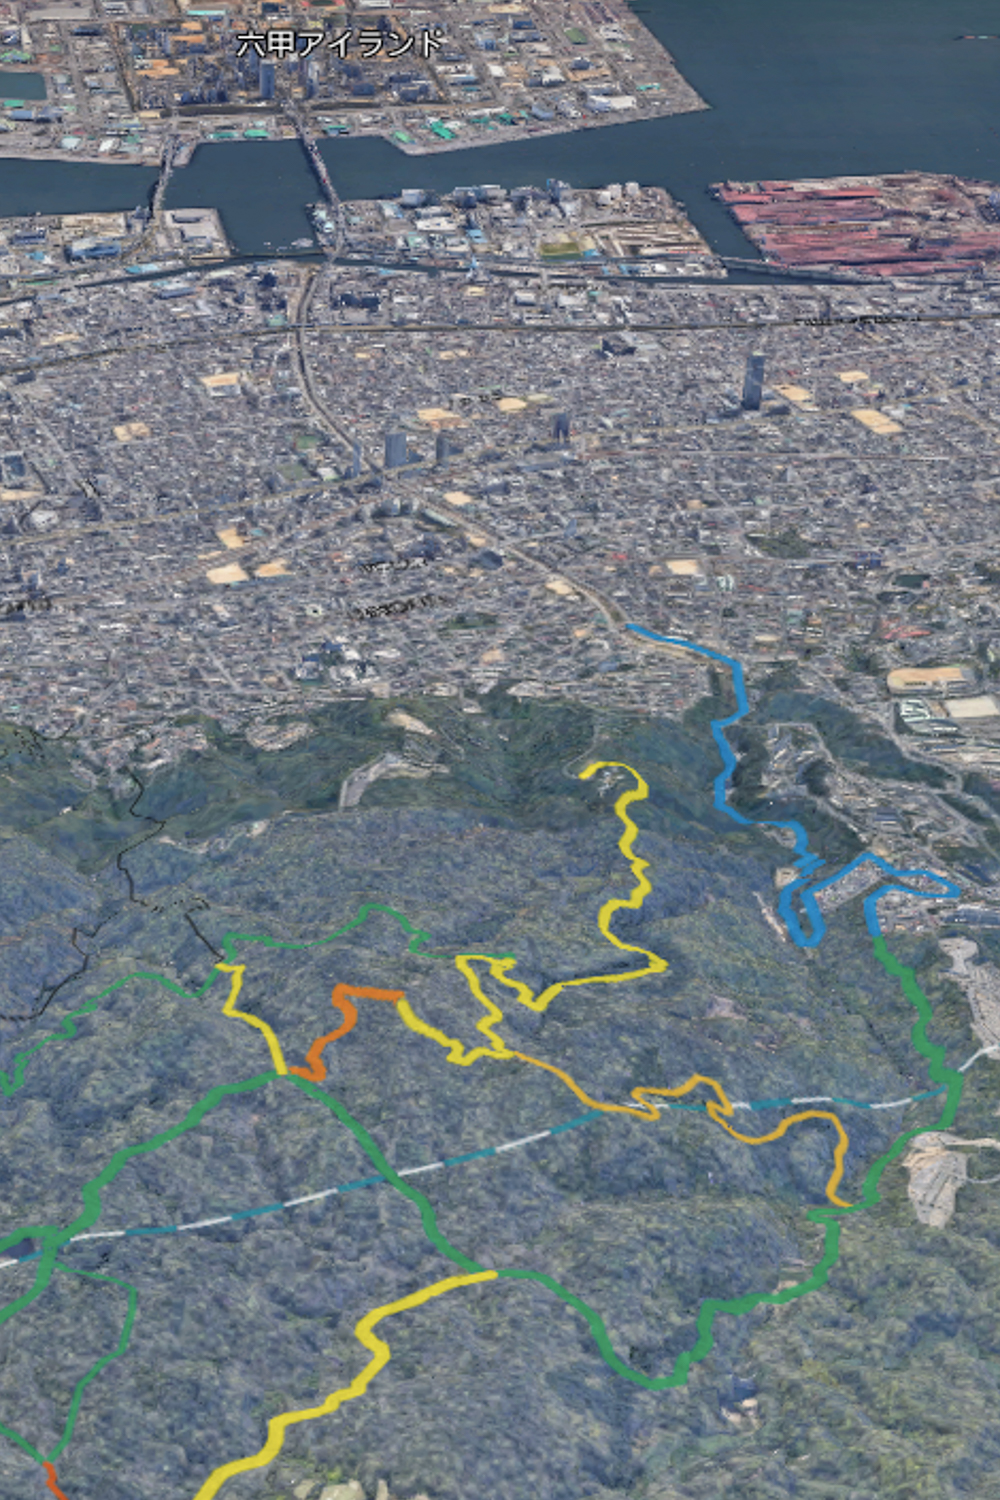 自分で作ったオリジナルマップ上で、六甲山から打越山〜東灘区を望む。